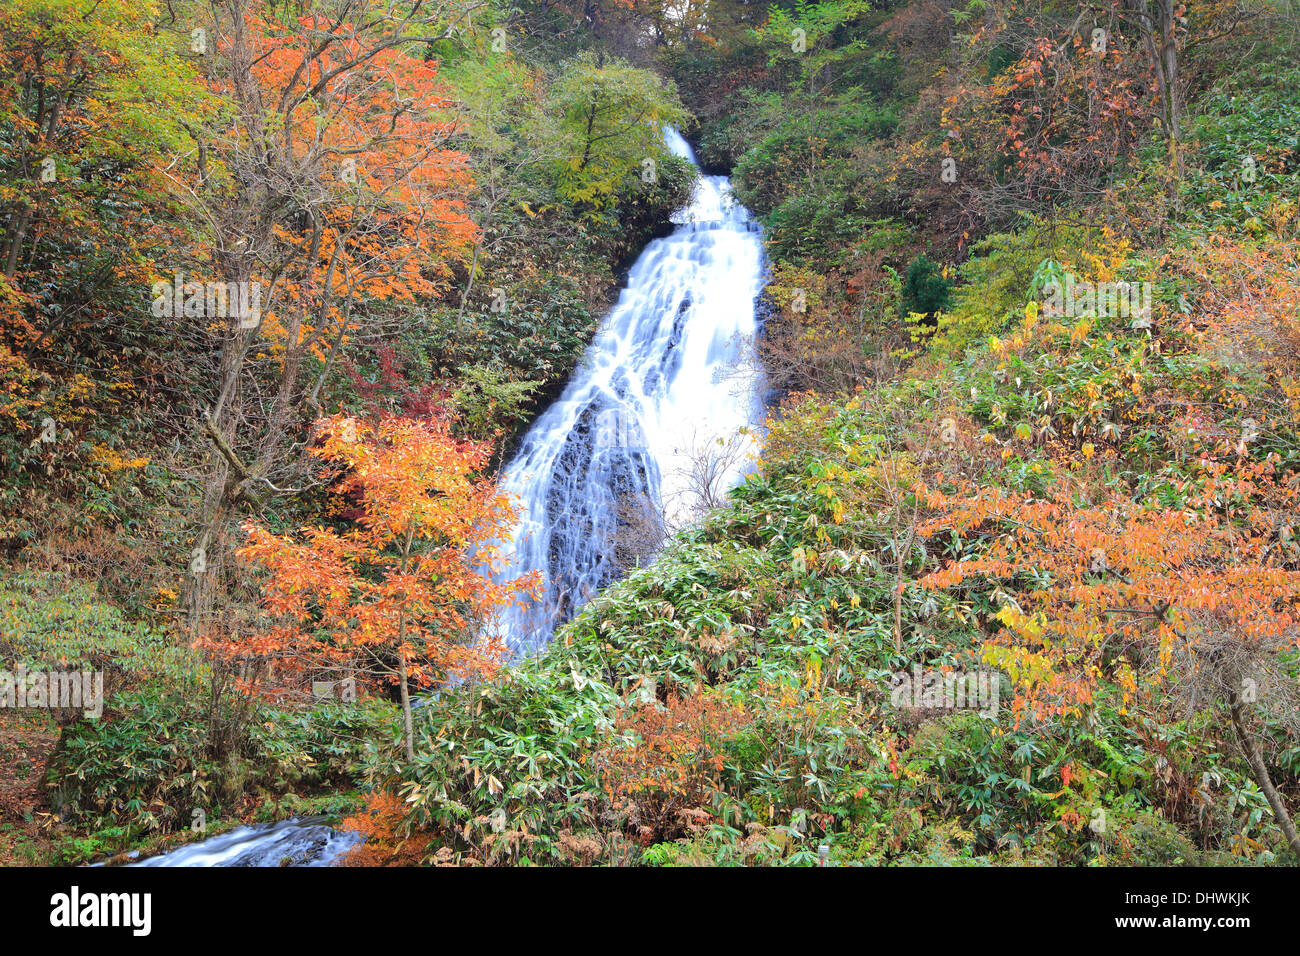 Waterfall in autumn, Name is Nanataki, Akita, Japan Stock Photo